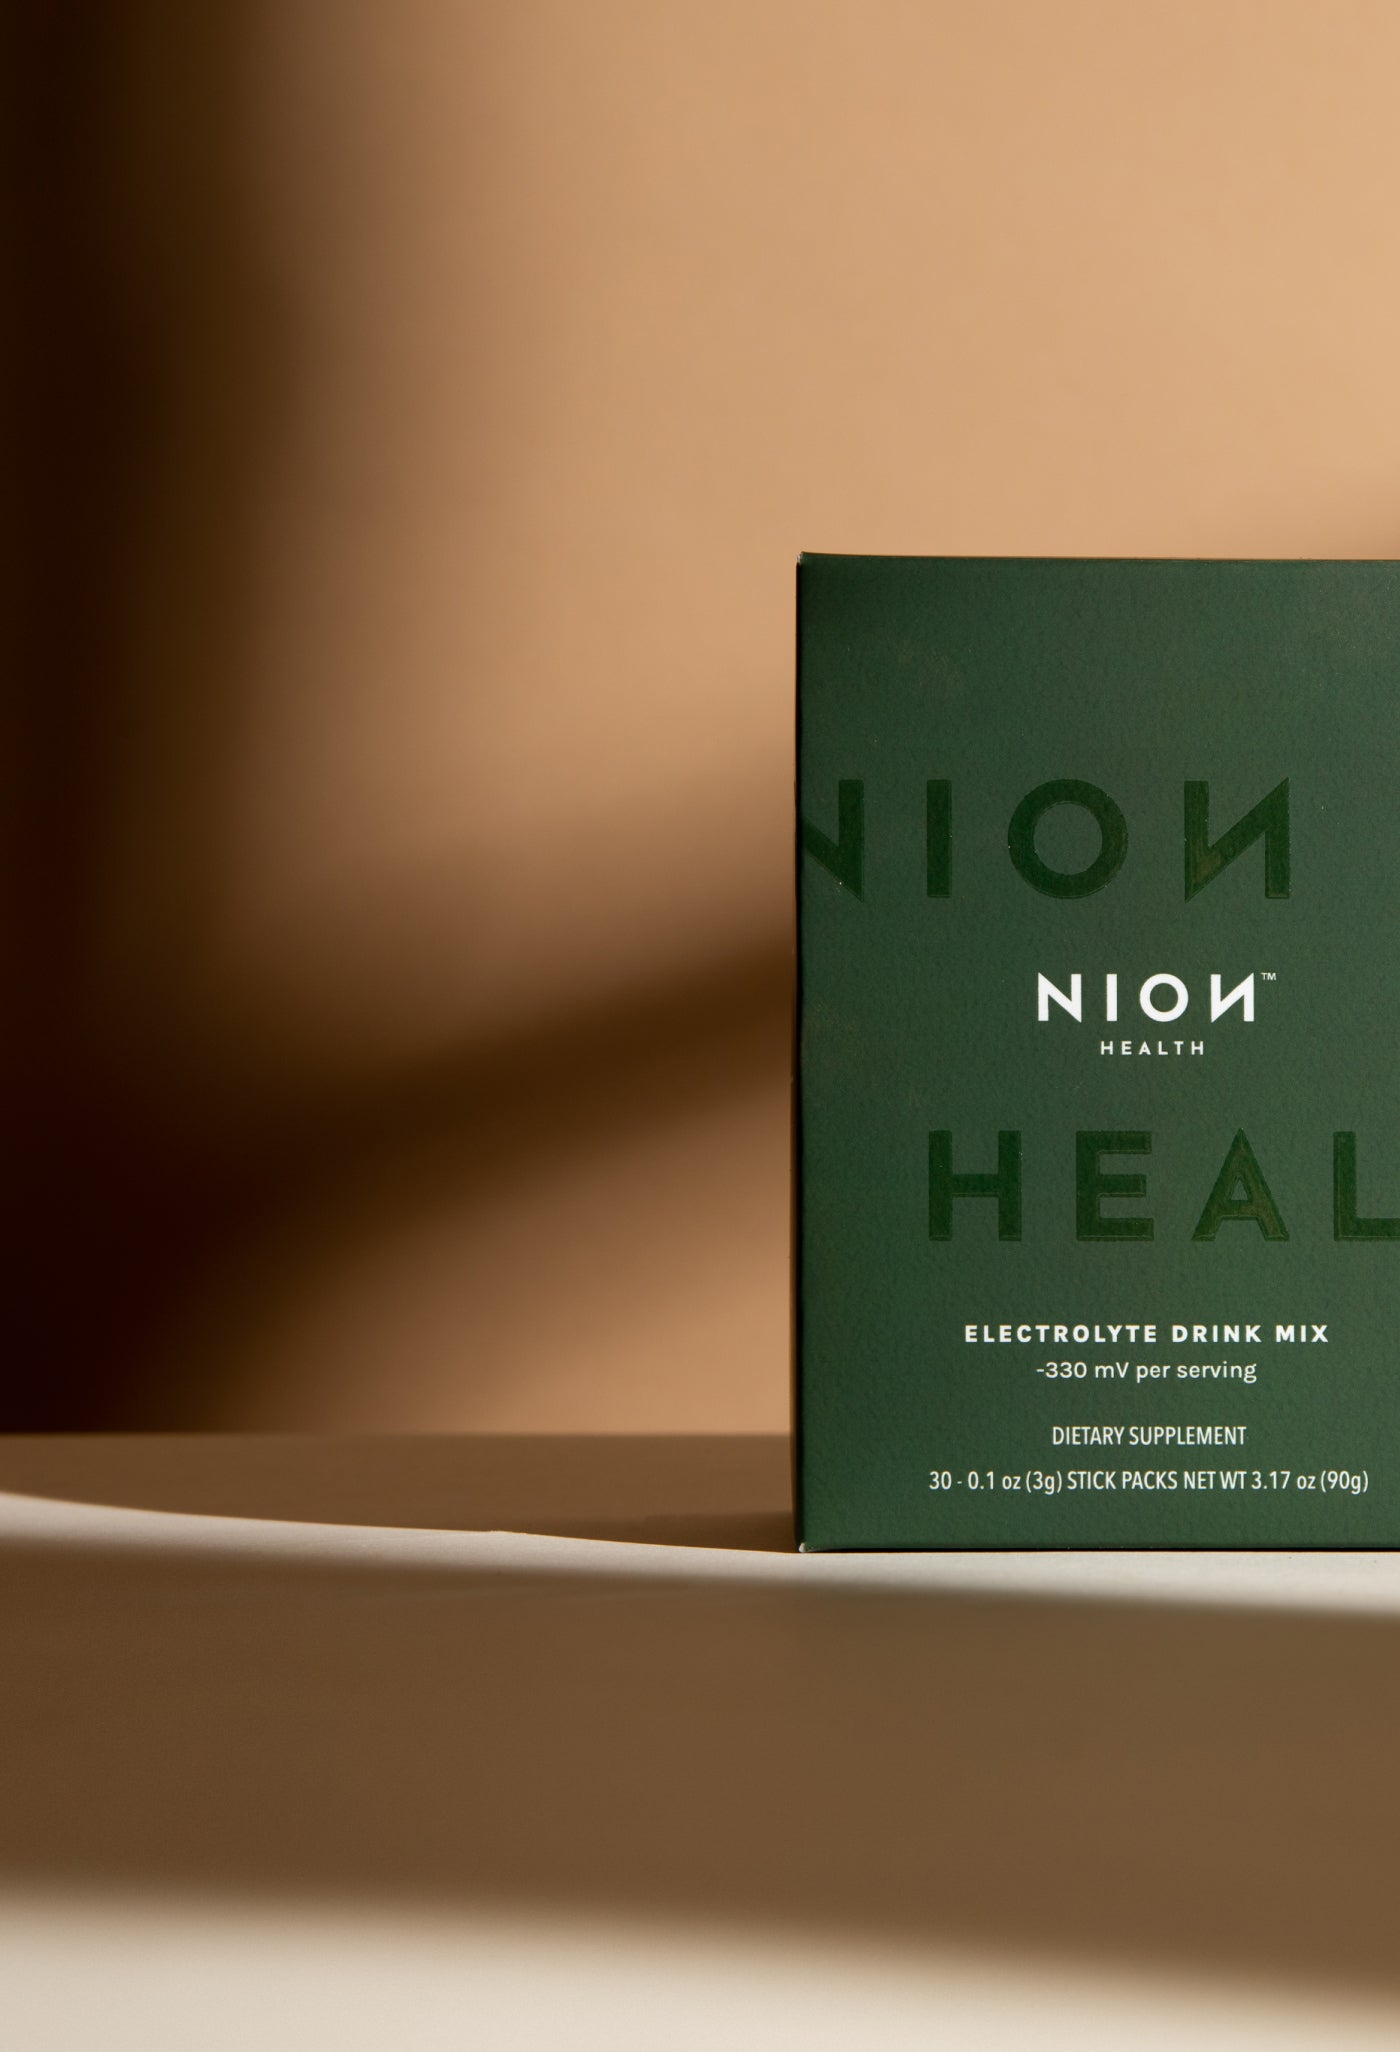 Nion Health Box